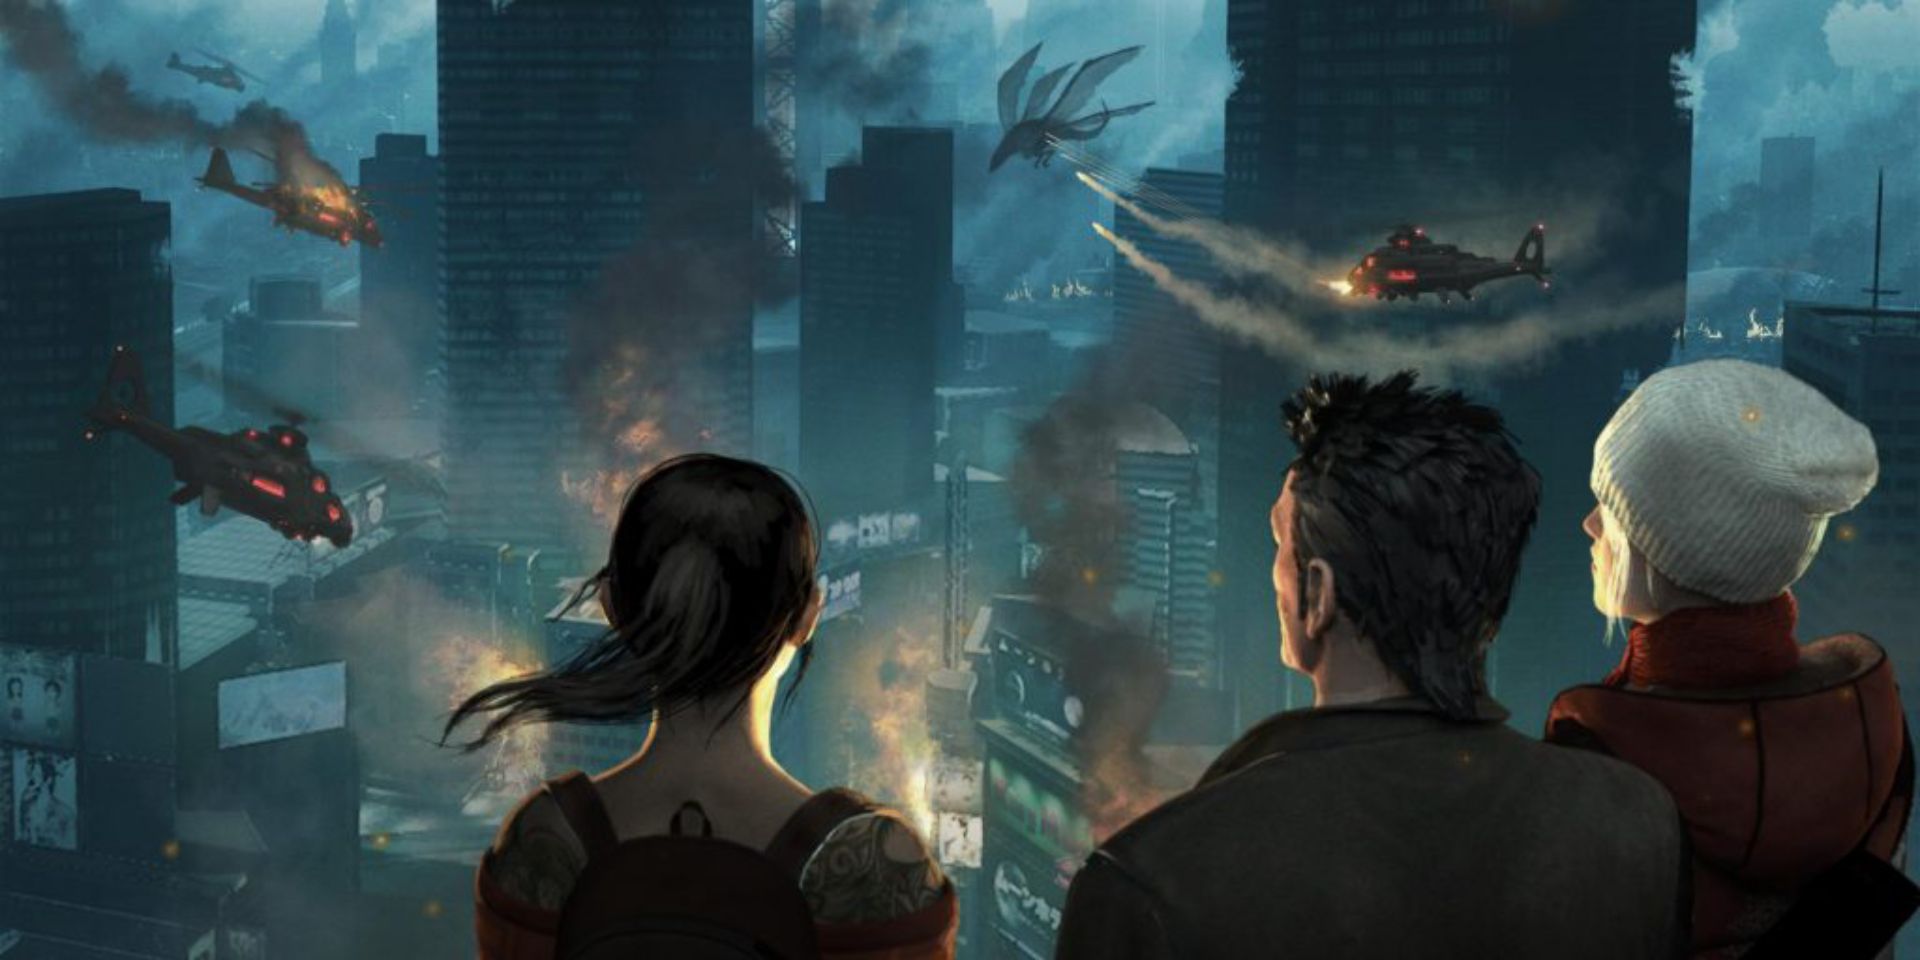 Urban Fantasy Video Games Japan vs US Secret World Legends Tokyo